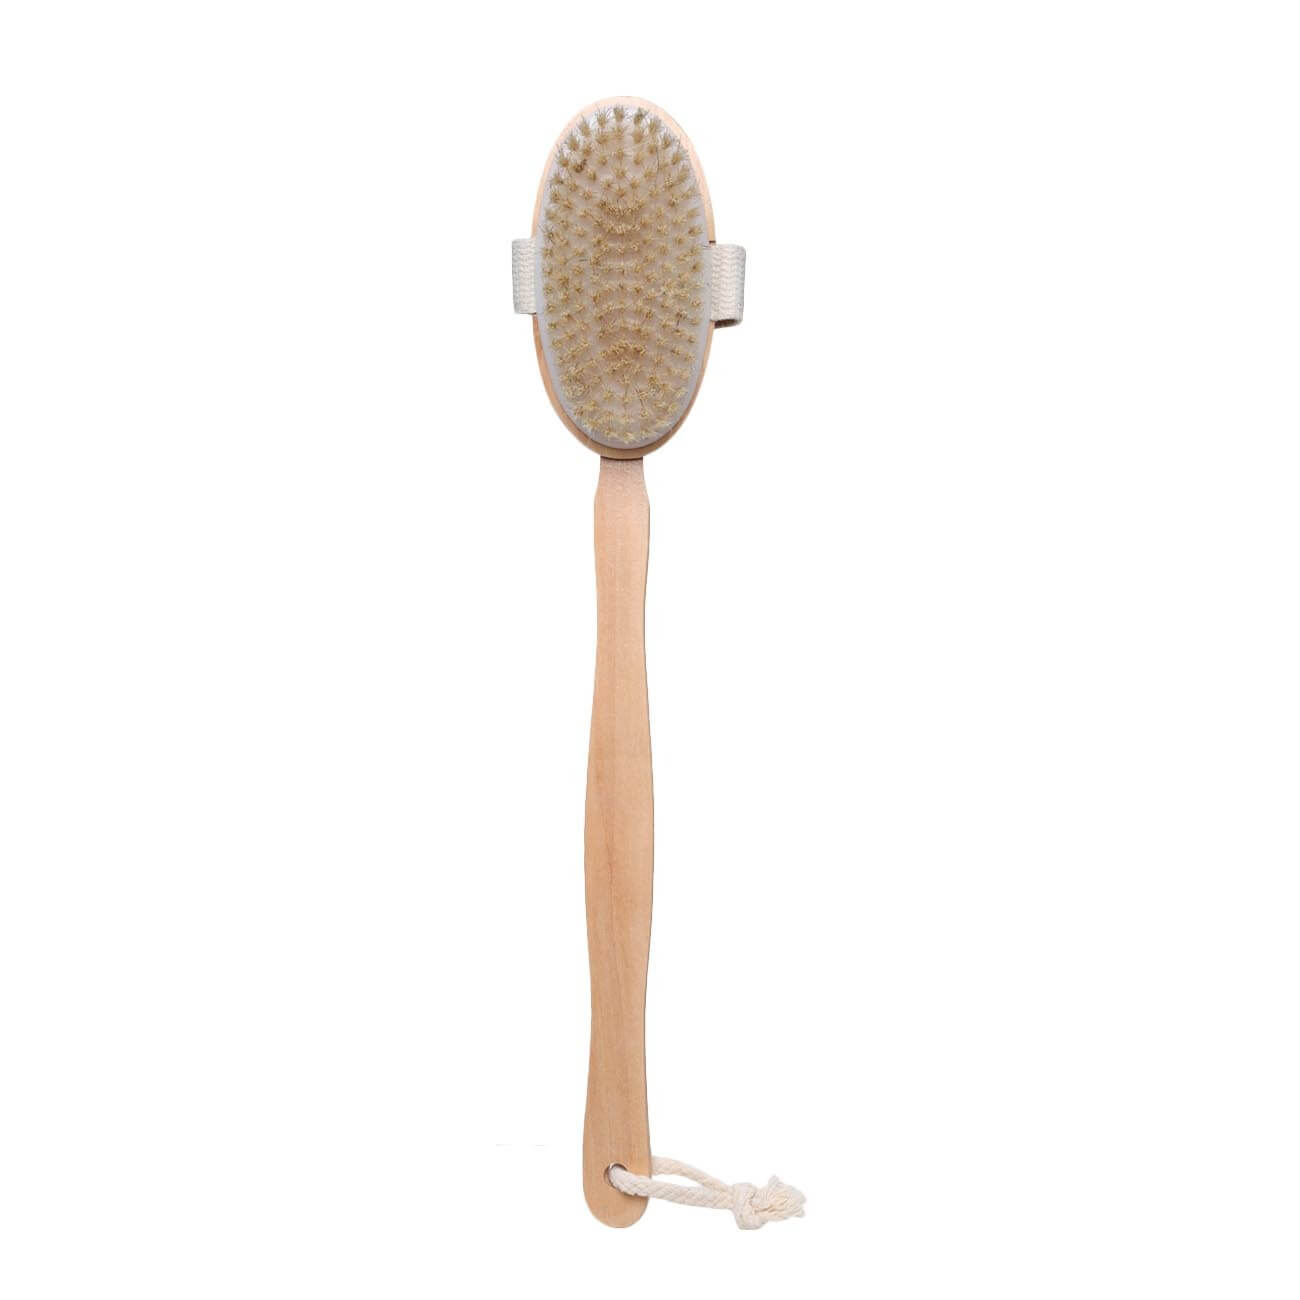 Щетка для сухого массажа, 40 см, с держателем, дерево/нейлон, Bamboo spa щетка для сухого массажа gloys soft 23 средней жесткости 23 см